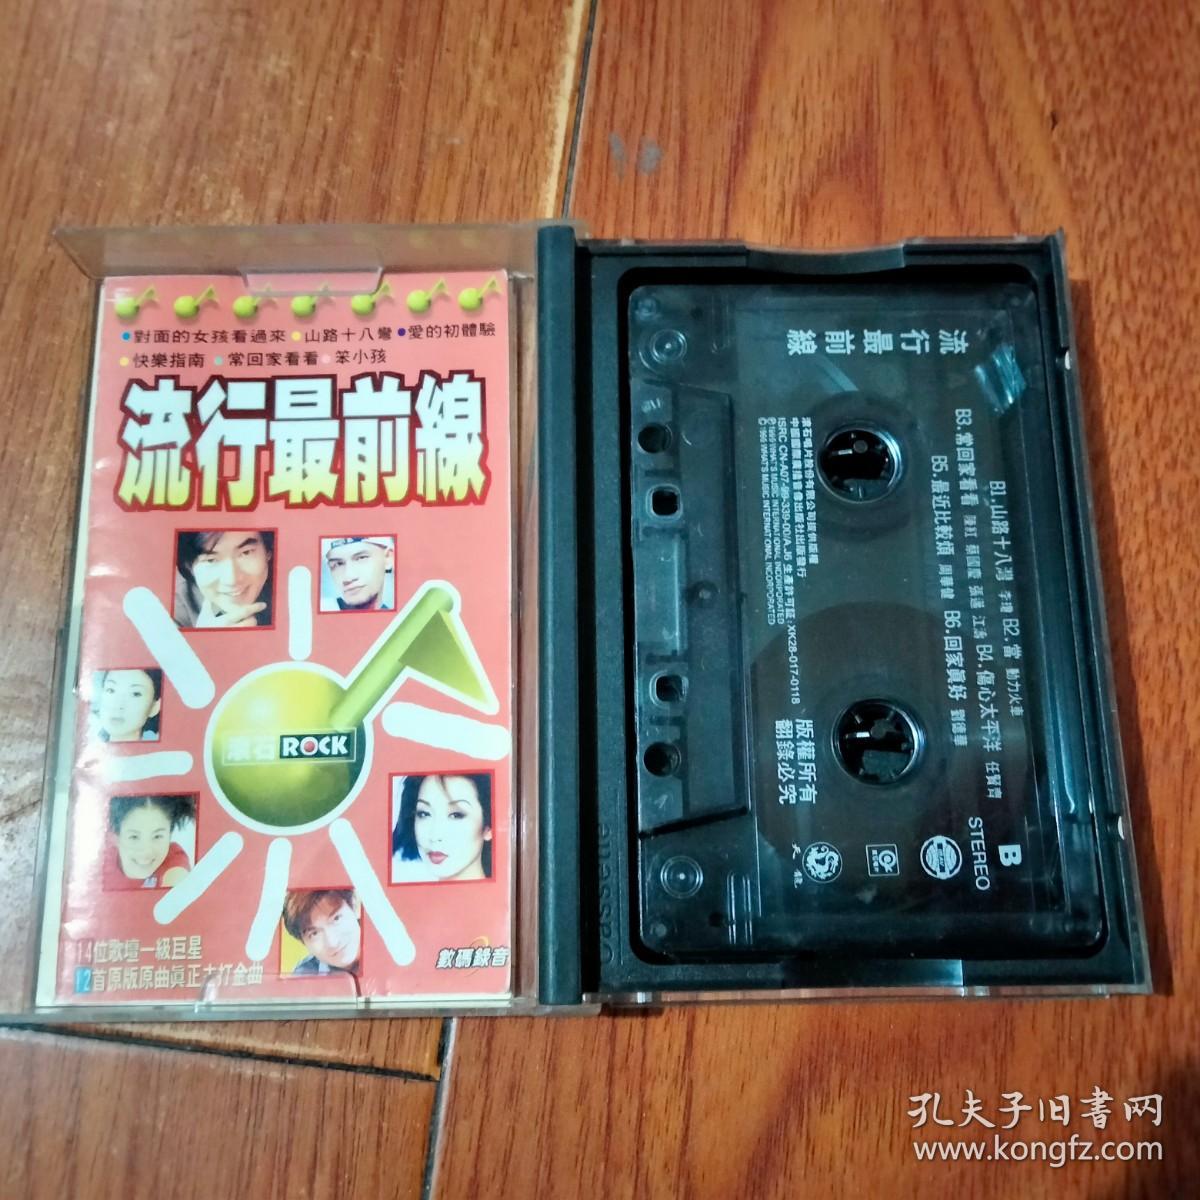 磁带：流行最前线（有歌词）中国国际广播音像出版社。磁带已检查正常播放【货号：铁2-118】自然旧。正版。详见书影。实物拍照